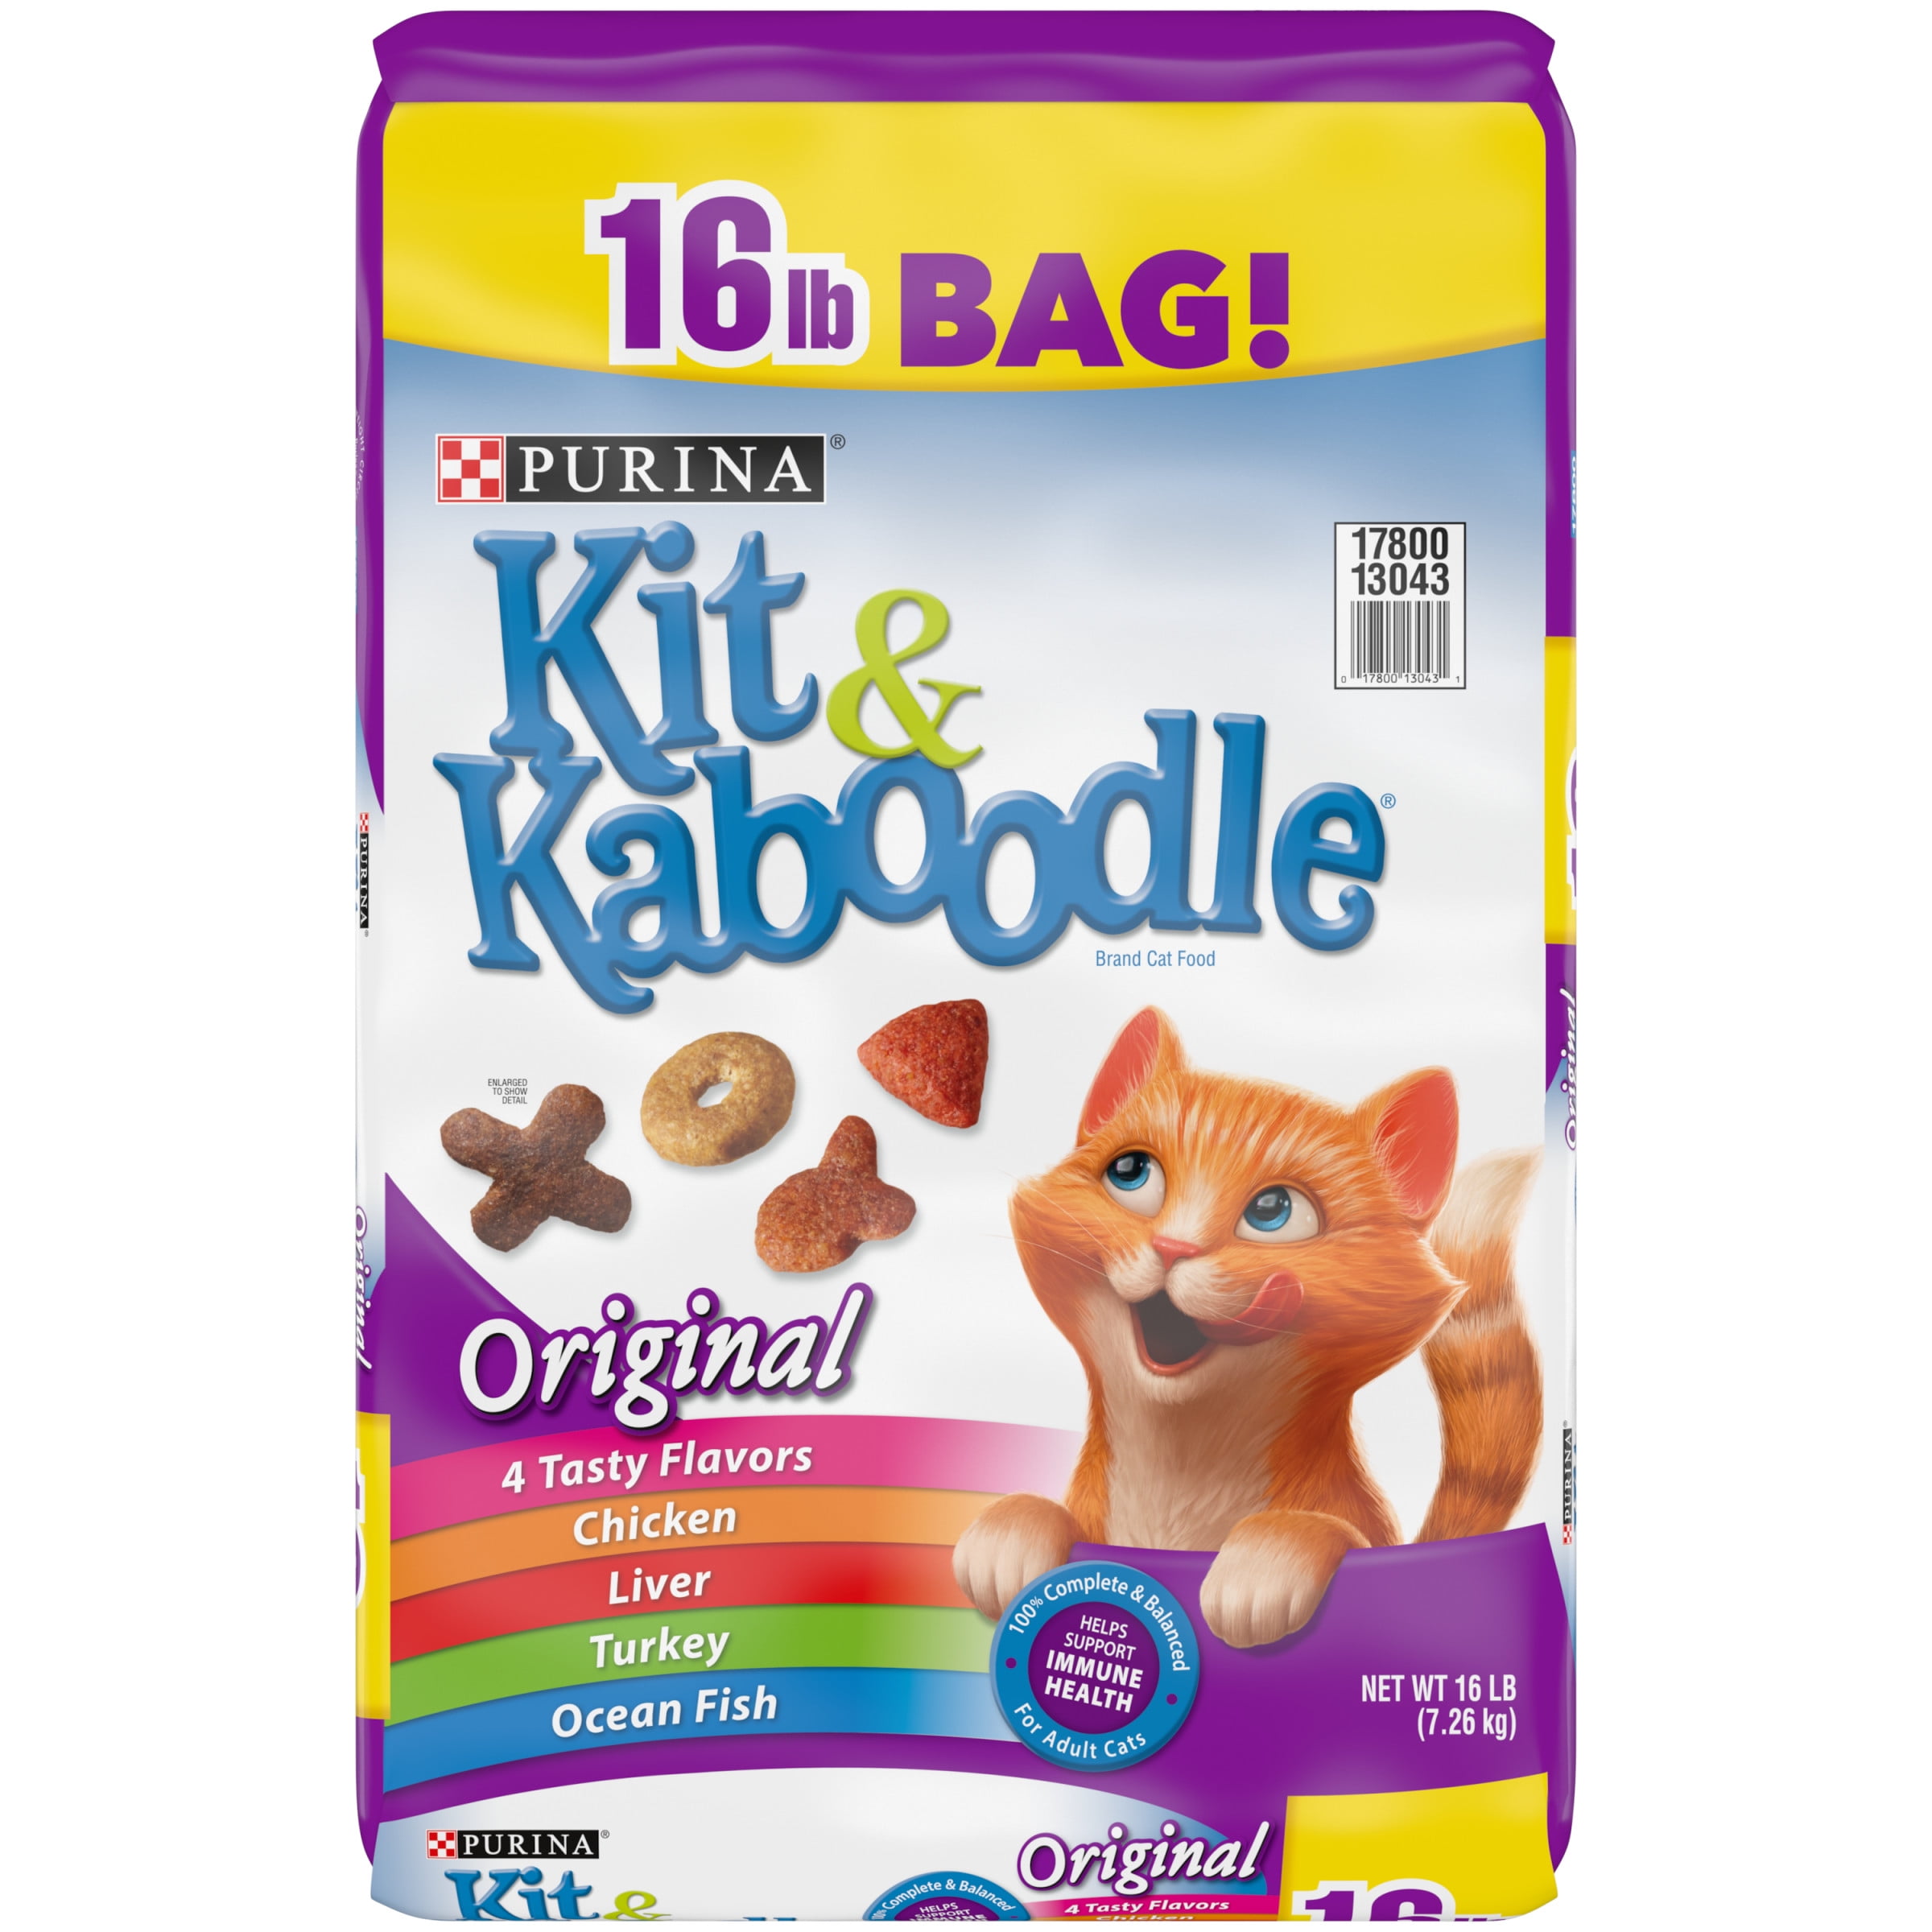 Purina Kit & Kaboodle Original Dry Cat Food, 16 lb Bag